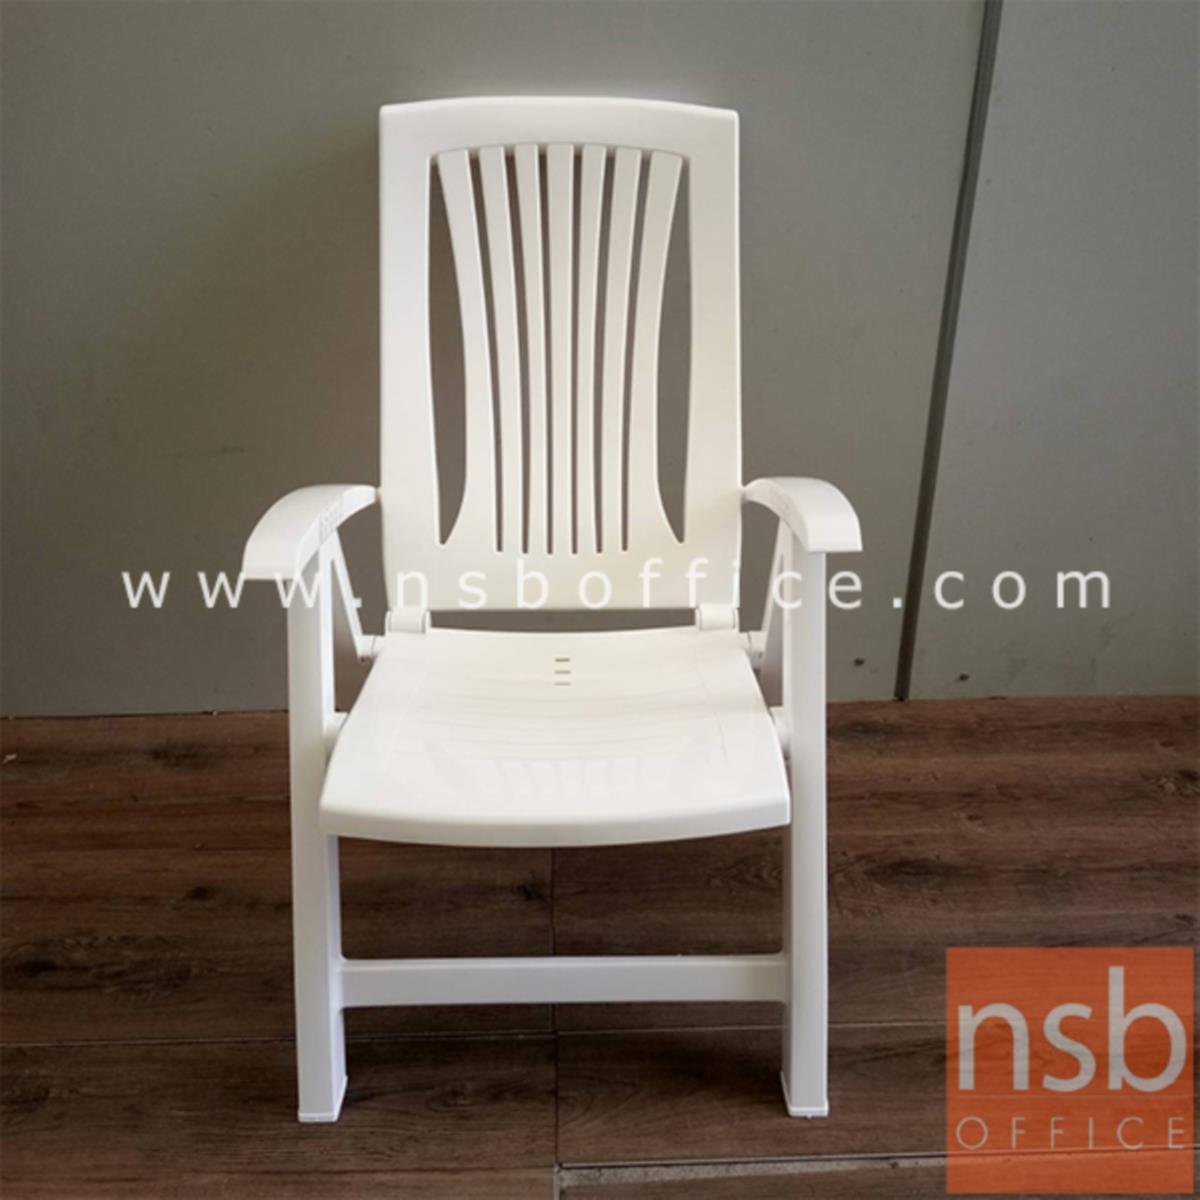 L02A251:เก้าอี้ปรับระดับได้   ขนาด 63W*110.5H cm. สีขาว